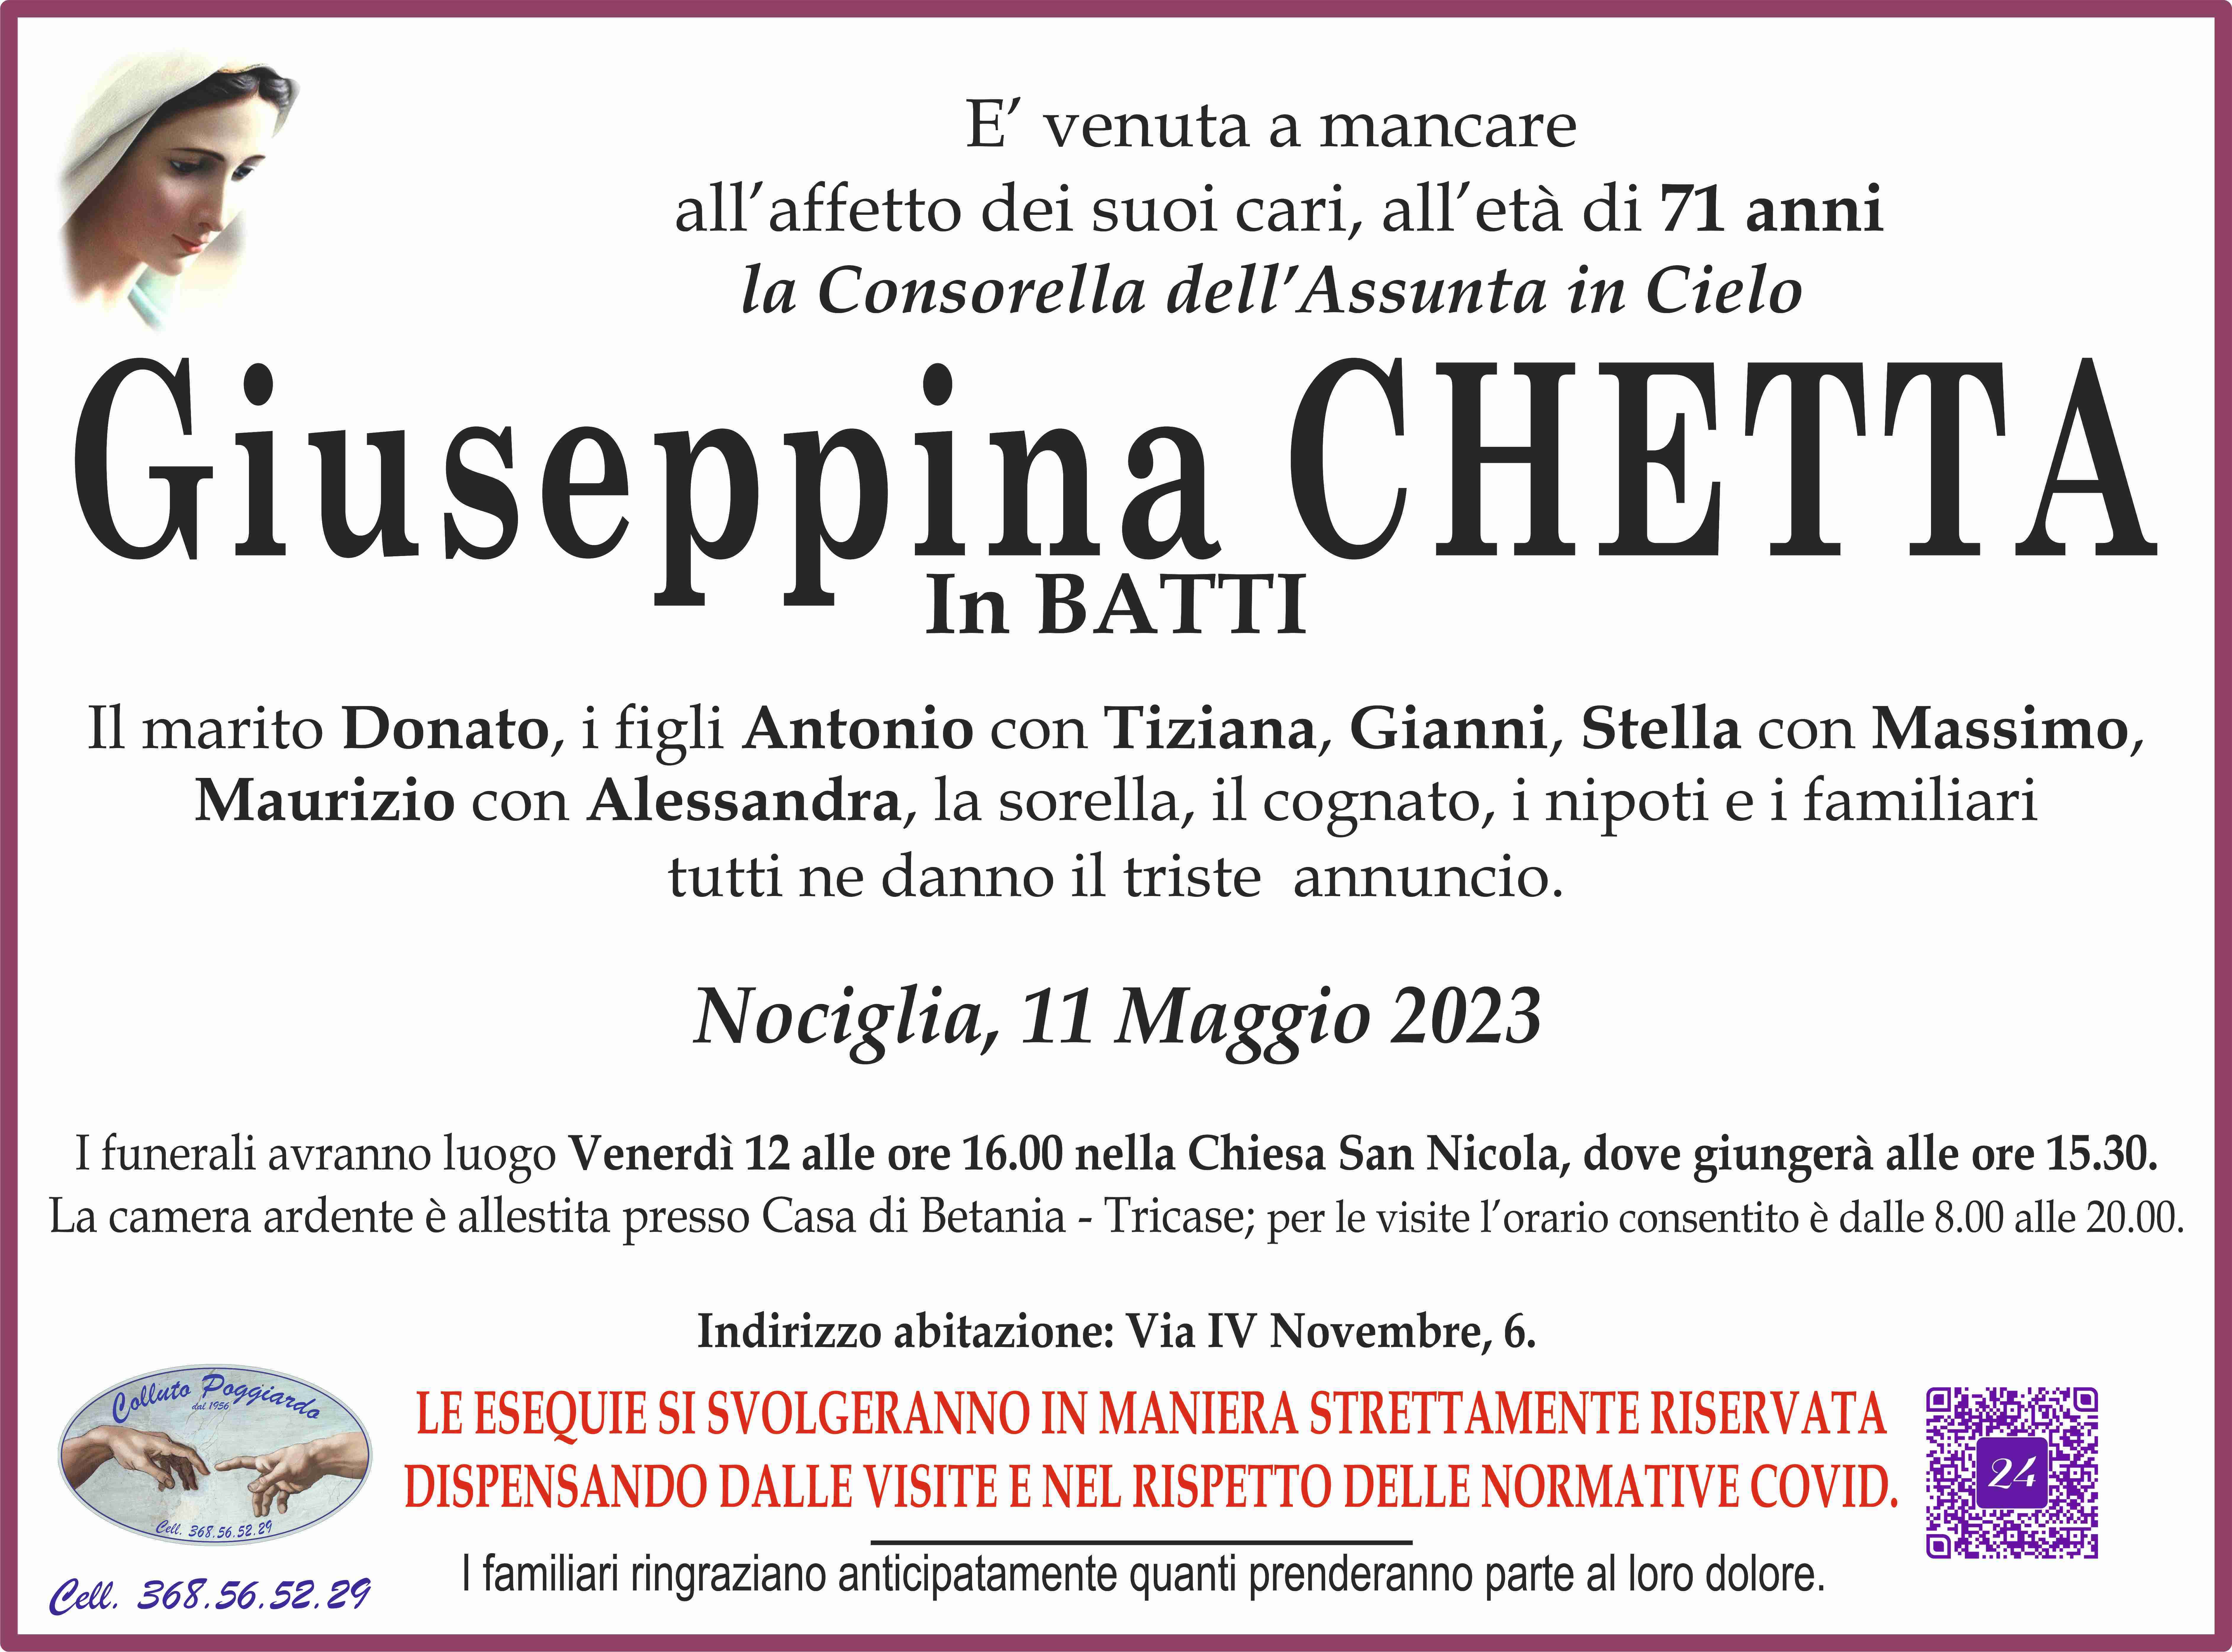 Giuseppina Chetta